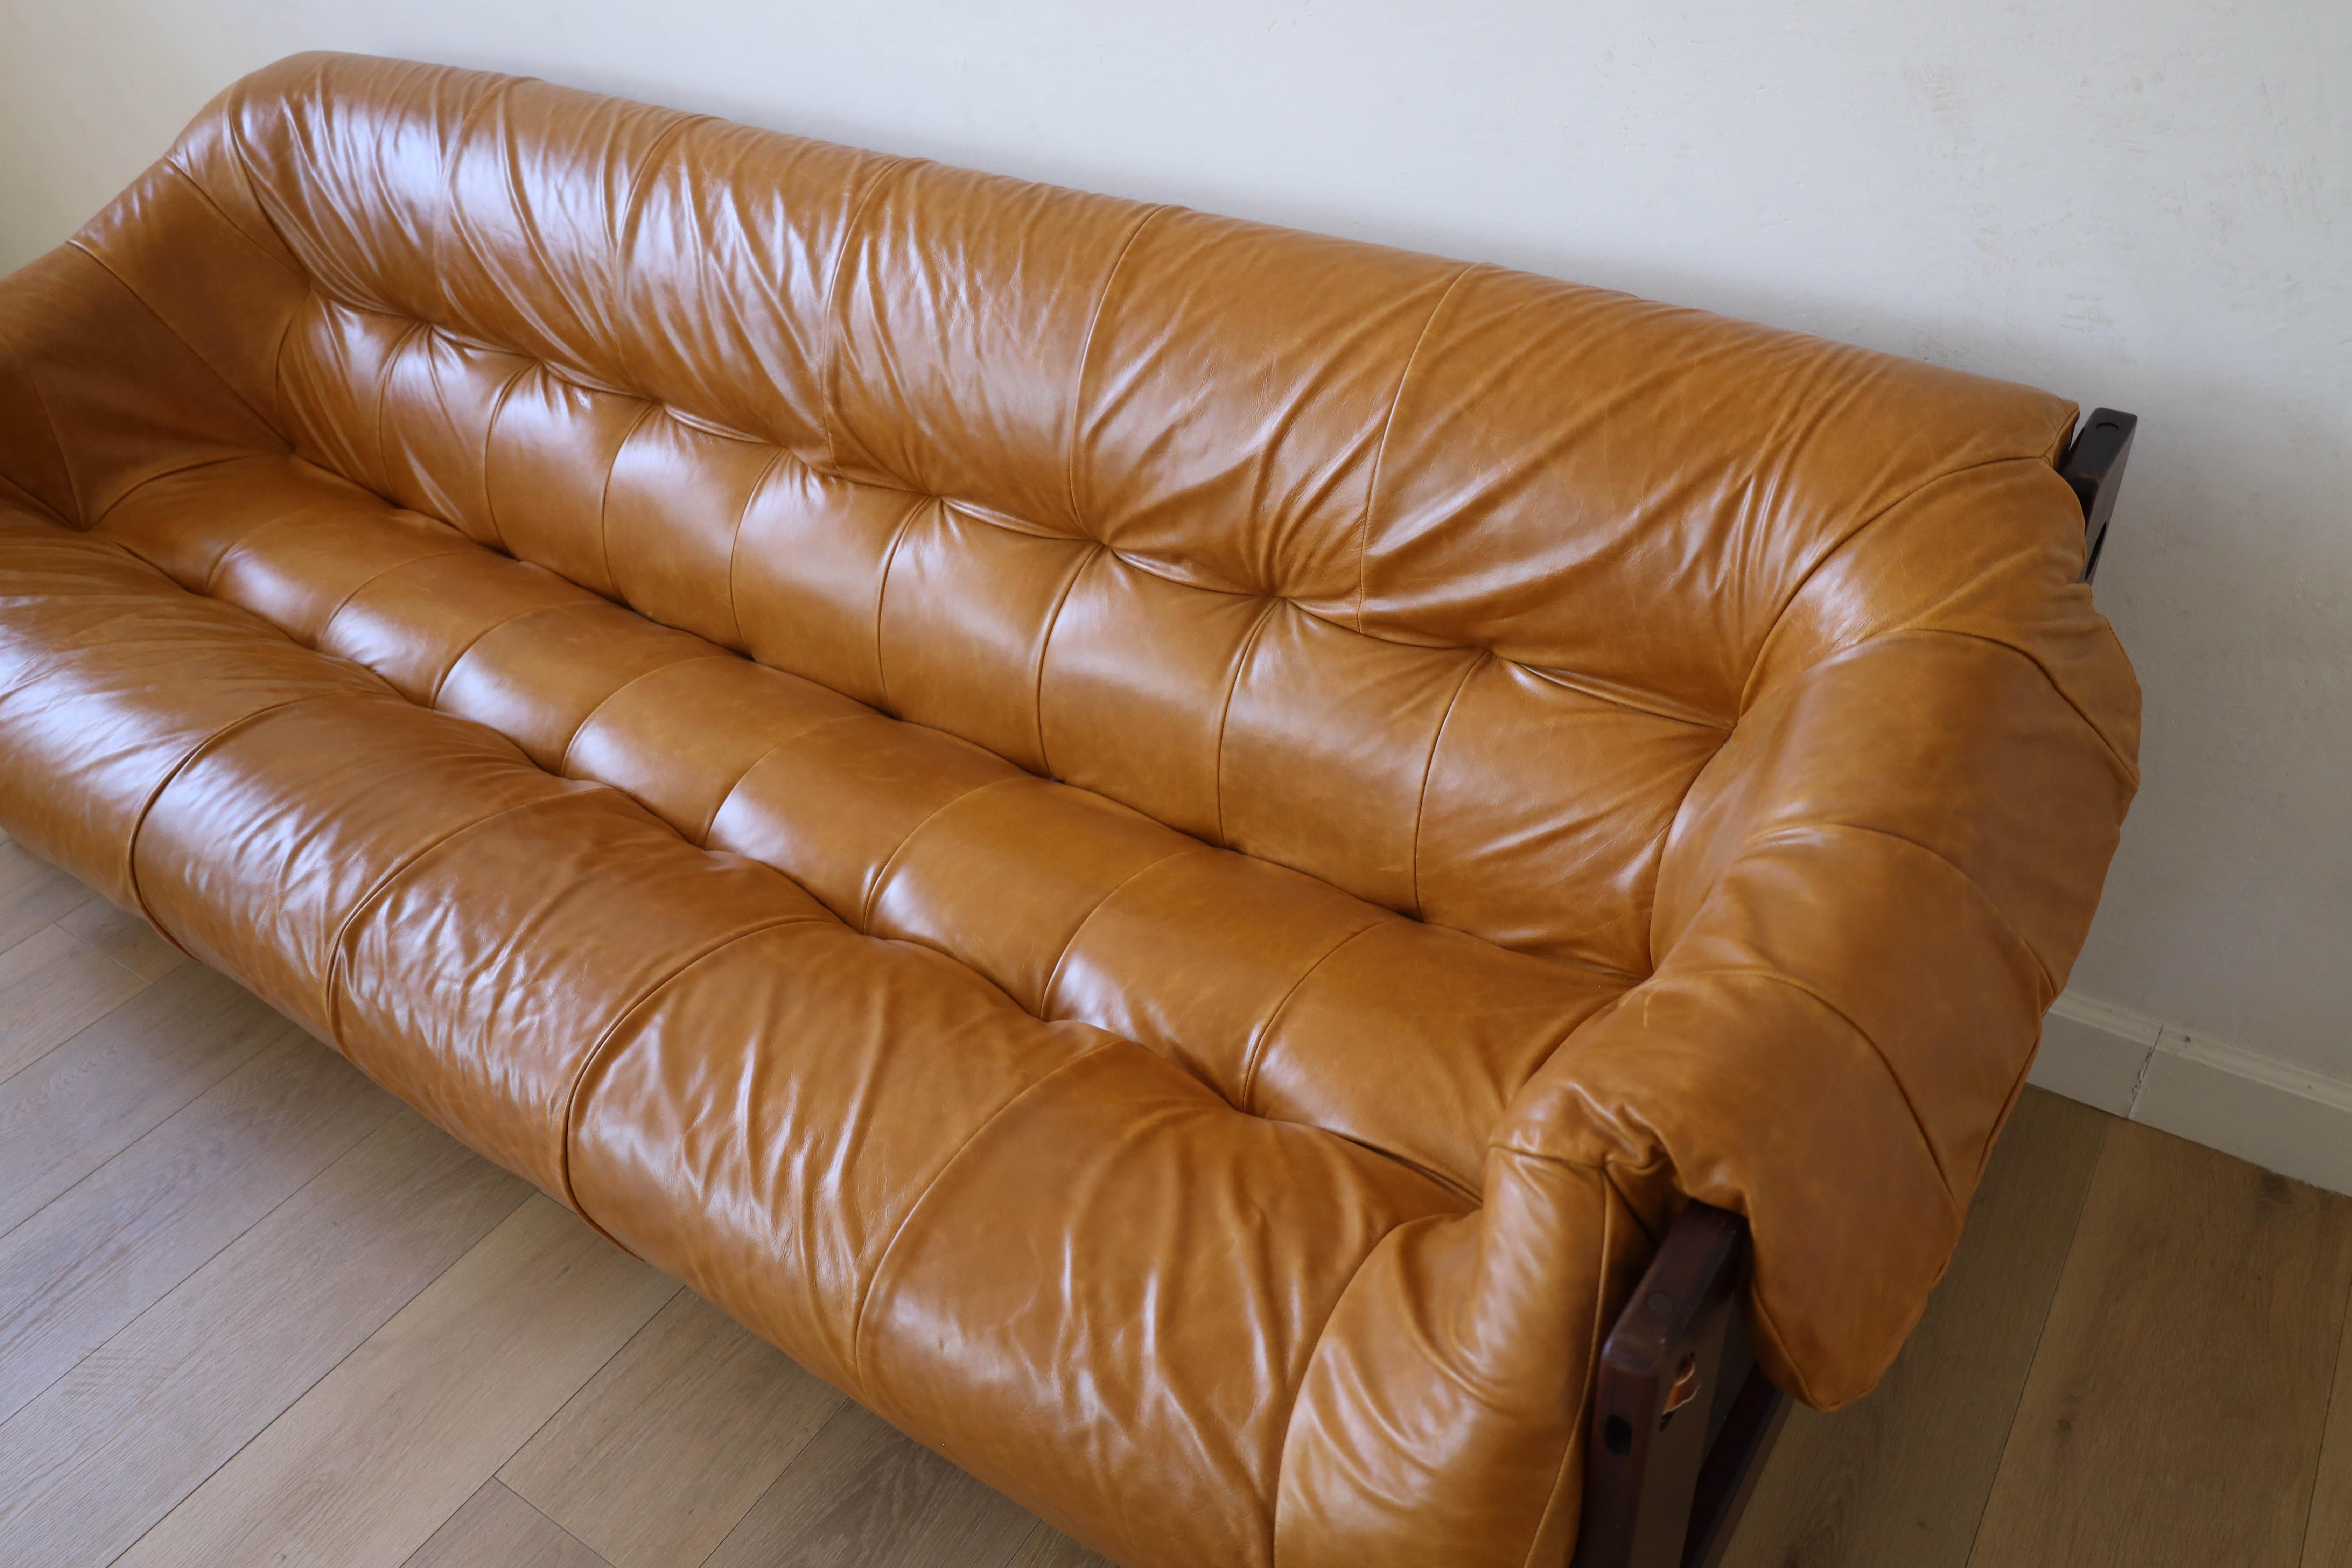 MP-97 Percival Lafer Sofa In Good Condition For Sale In Dallas, TX